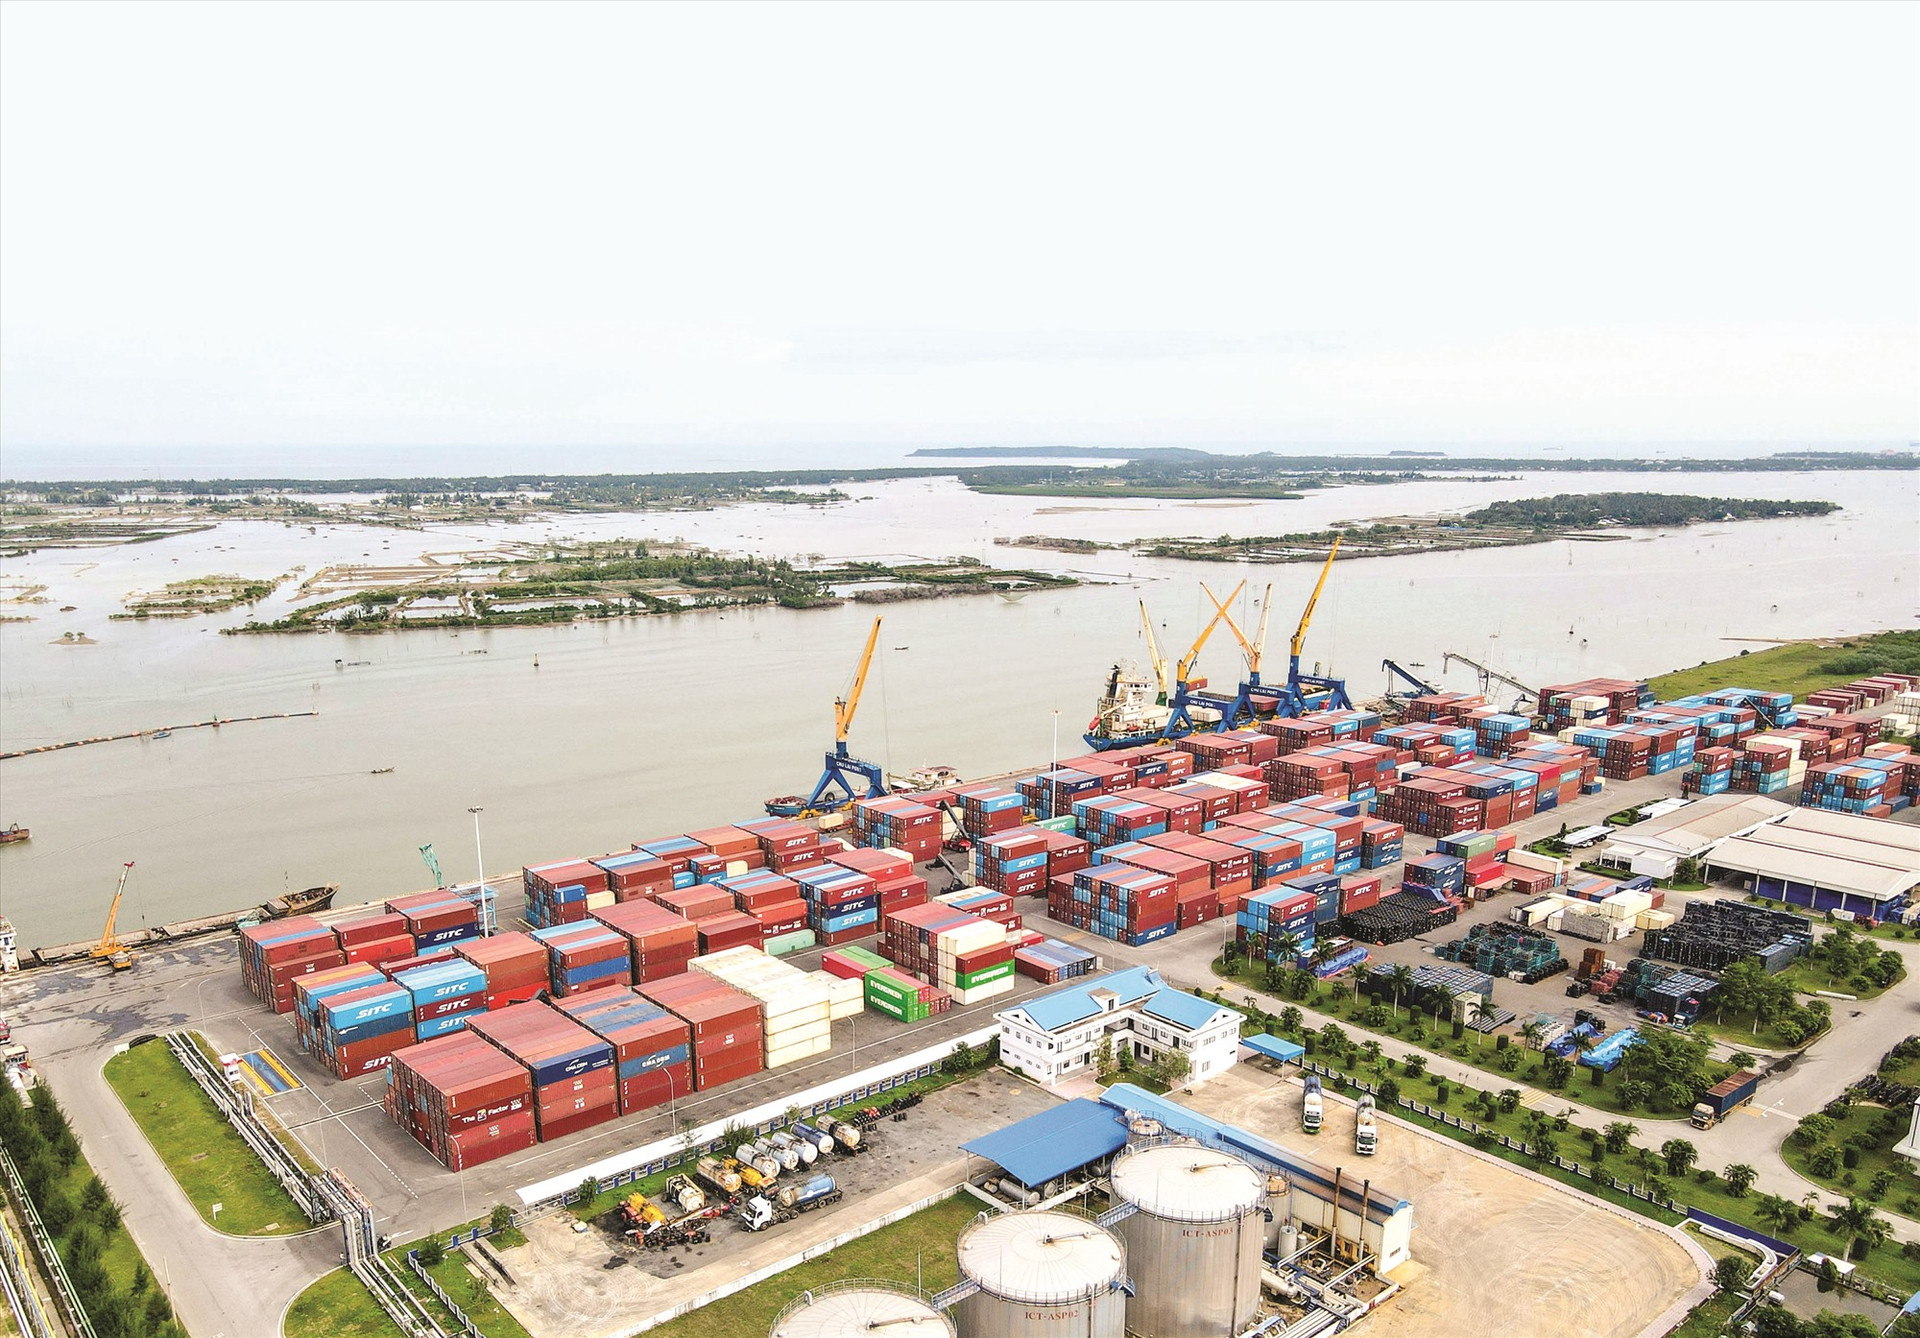 Mở rộng, nâng cấp cảng biển Chu Lai sẽ giải quyết nhiều bất cập liên quan chi phí logistics, tạo đối trọng về xuất nhập khẩu cho khu vực miền Trung - Tây Nguyên. Ảnh: PHƯƠNG THẢO